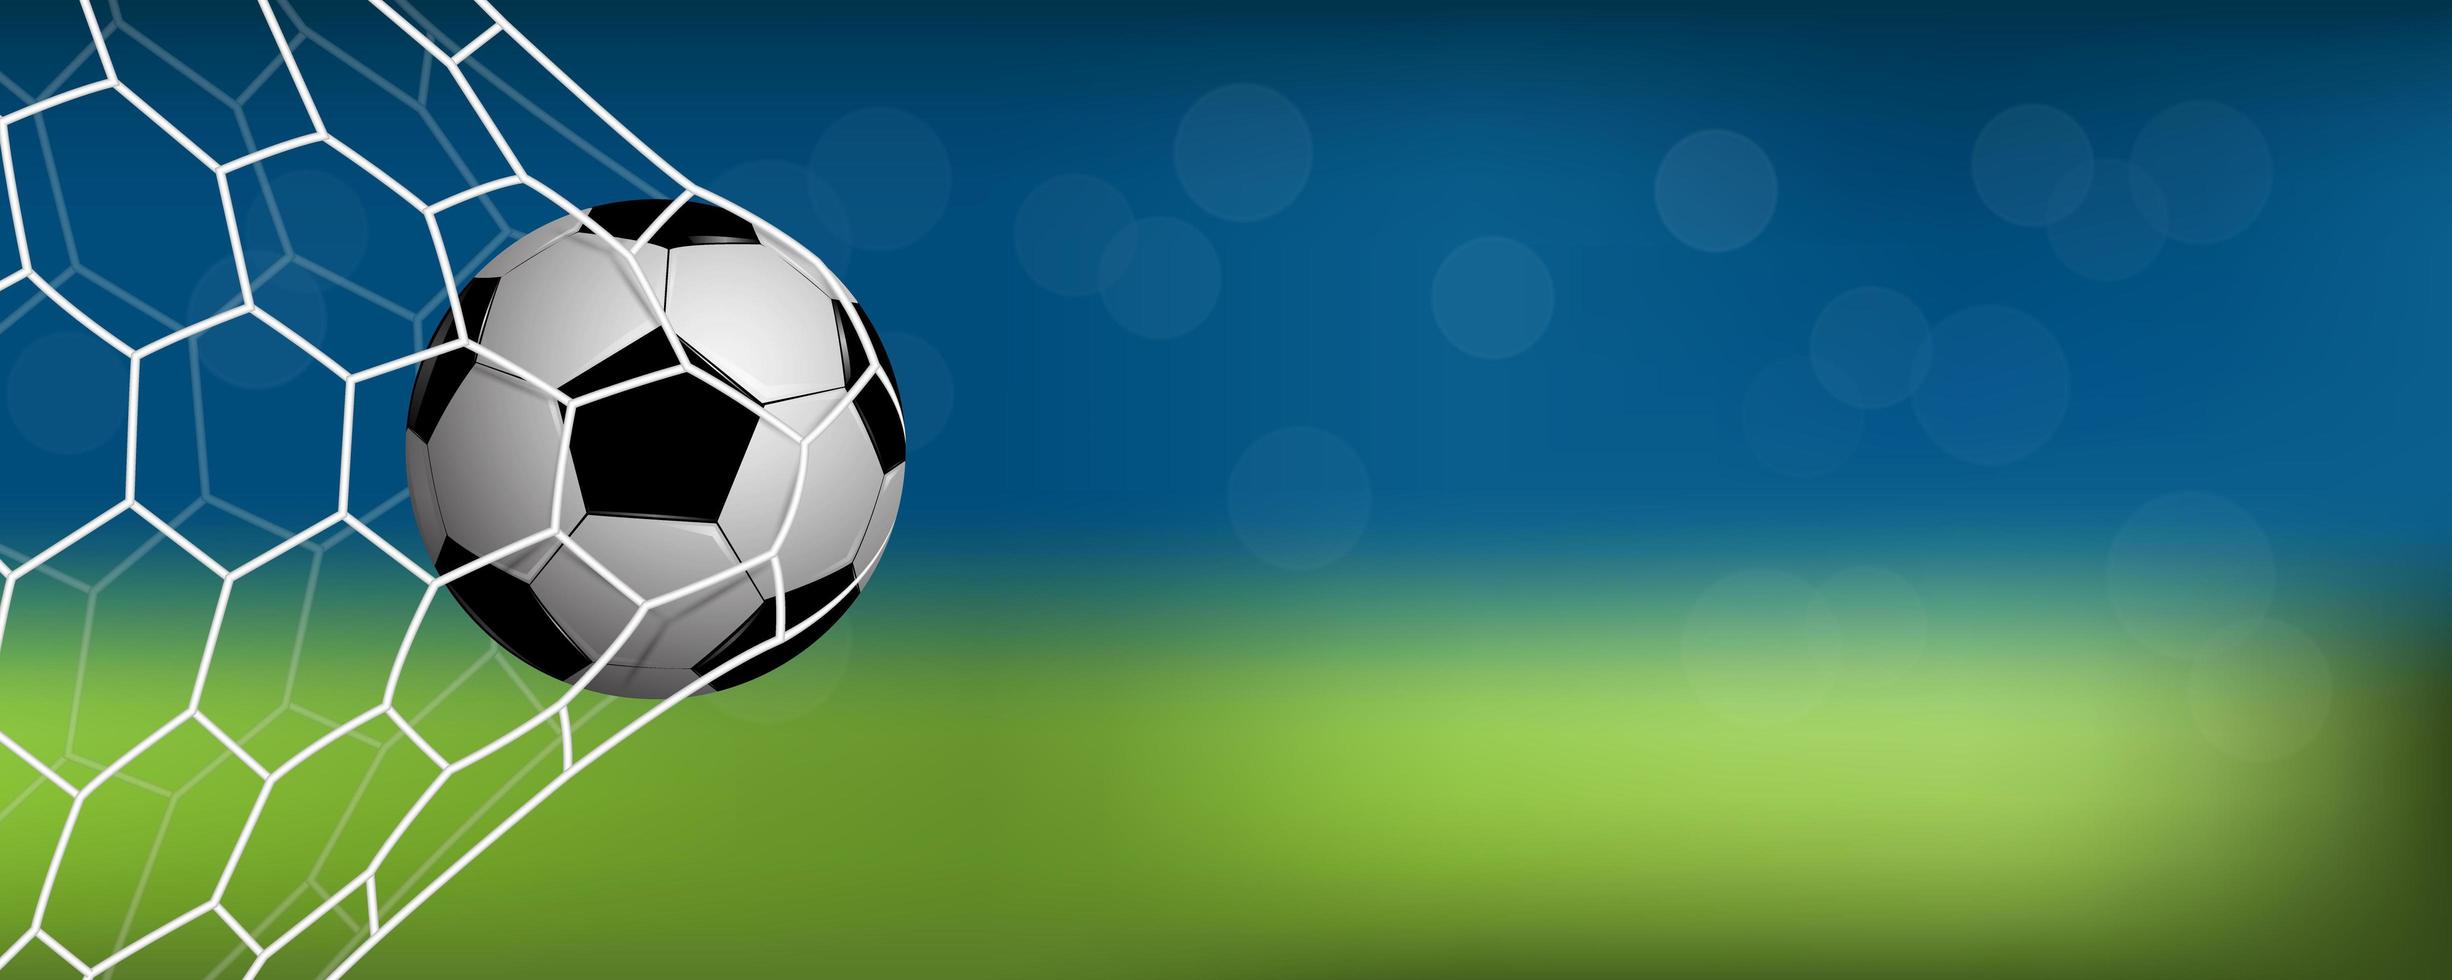 realistisk fotboll eller fotboll i nät med kopieringsutrymme vektor